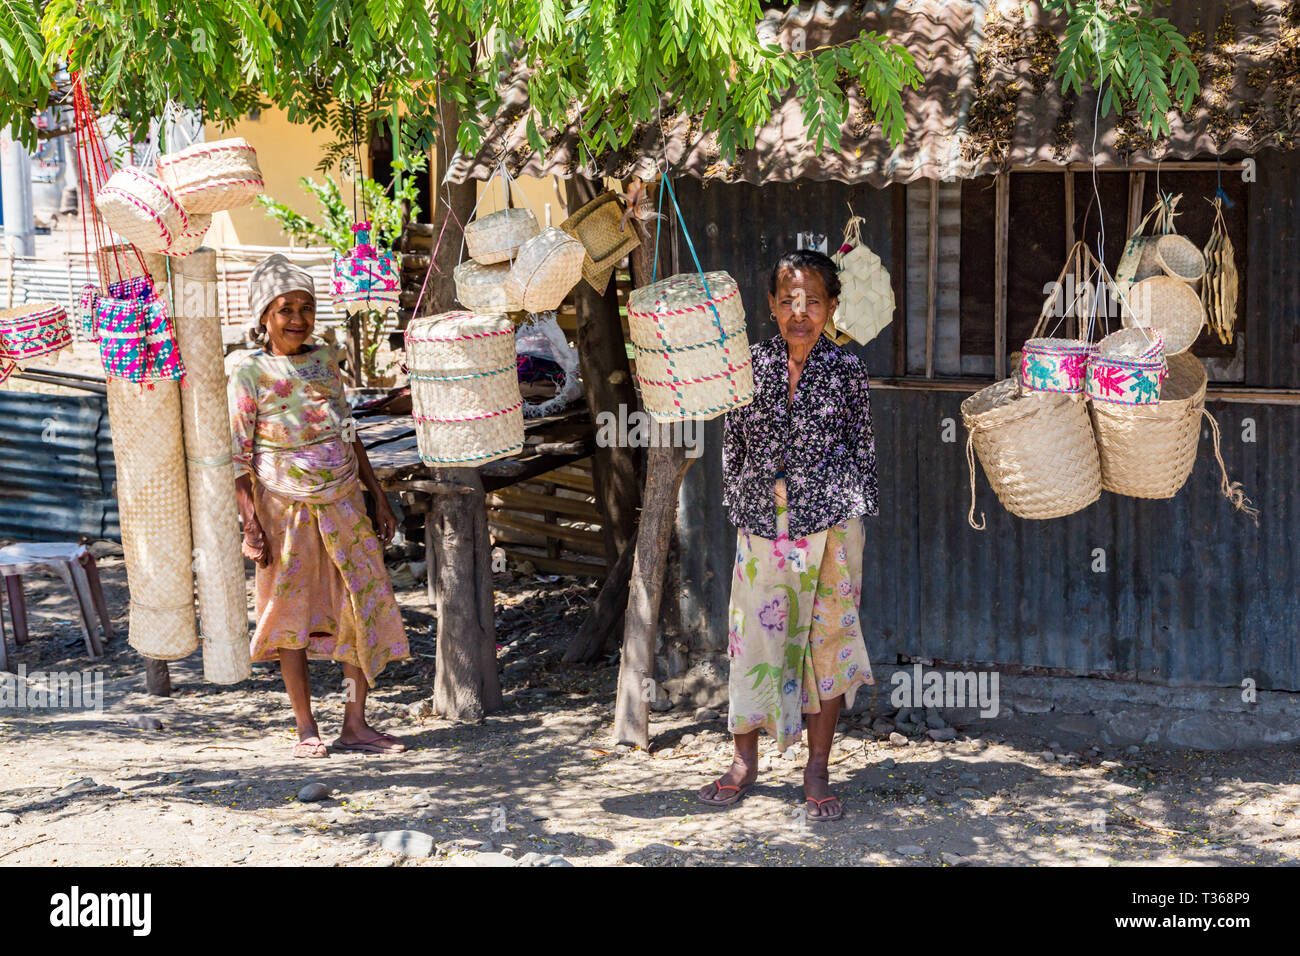 Dili, Timor Est - 11 Ago, 2015: due anziani locali nativi di Timor Est le donne, street vending tradizionali canestri di vimini appesi a funi, in un stagno h Foto Stock